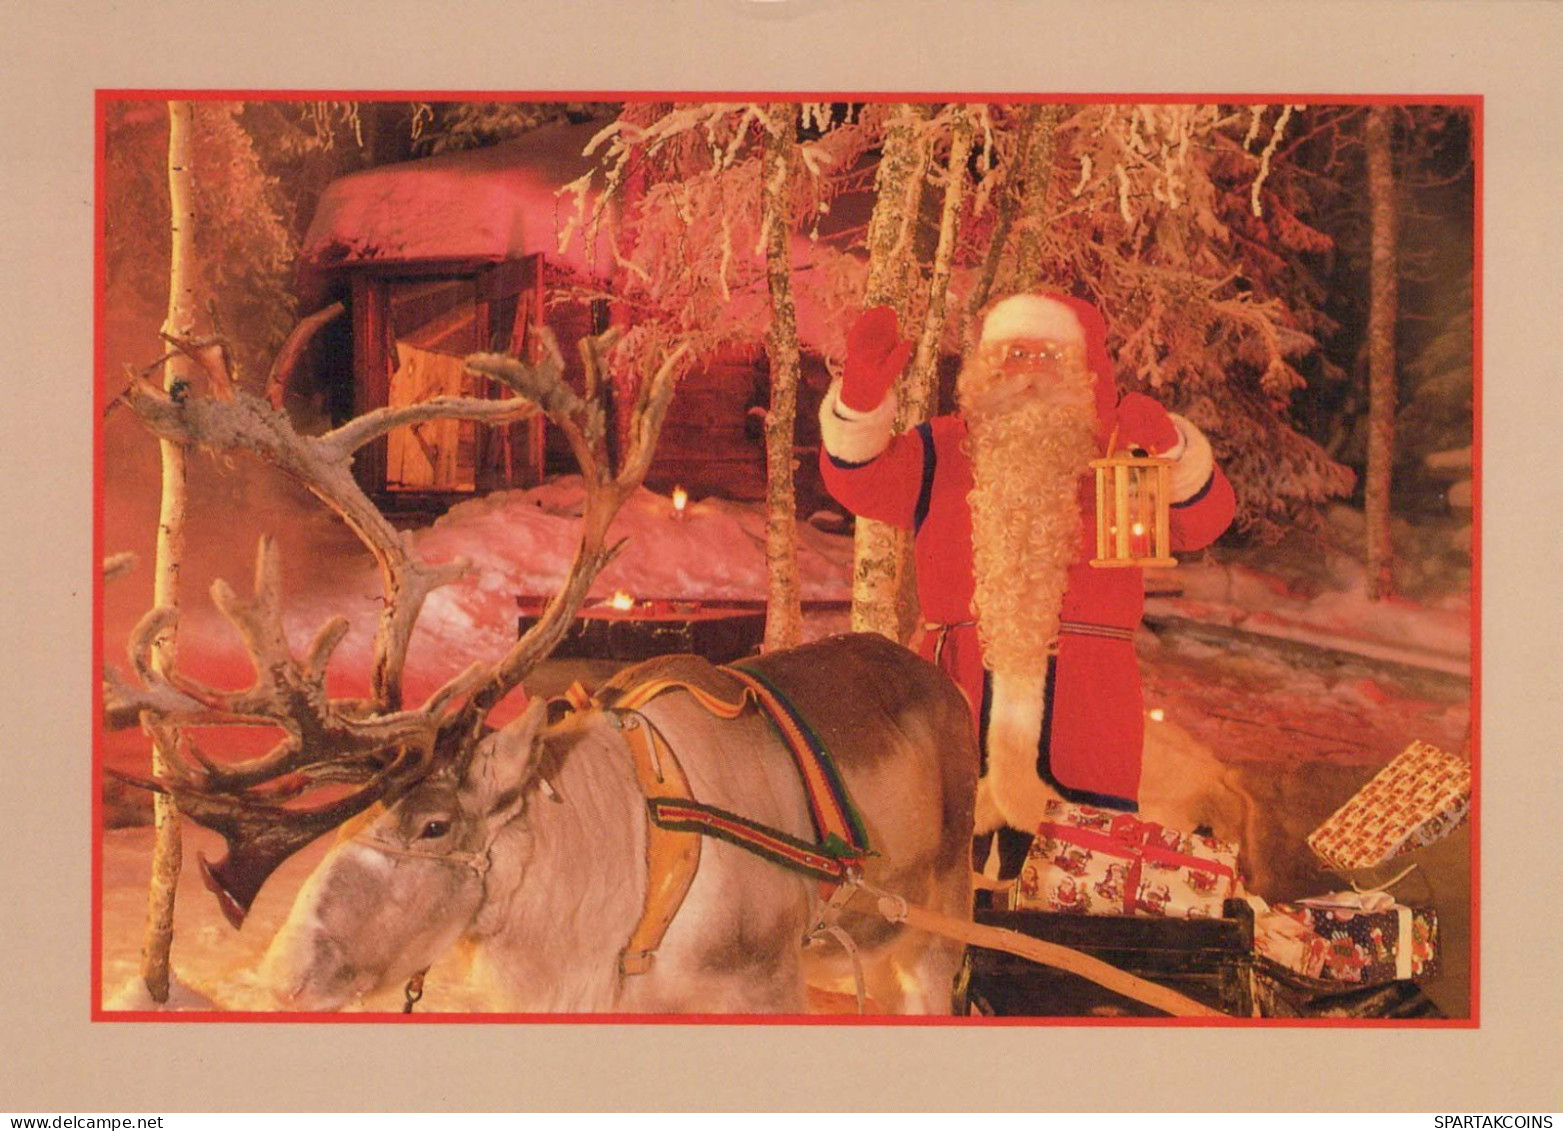 WEIHNACHTSMANN SANTA CLAUS Neujahr Weihnachten Vintage Ansichtskarte Postkarte CPSM #PBB186.A - Santa Claus